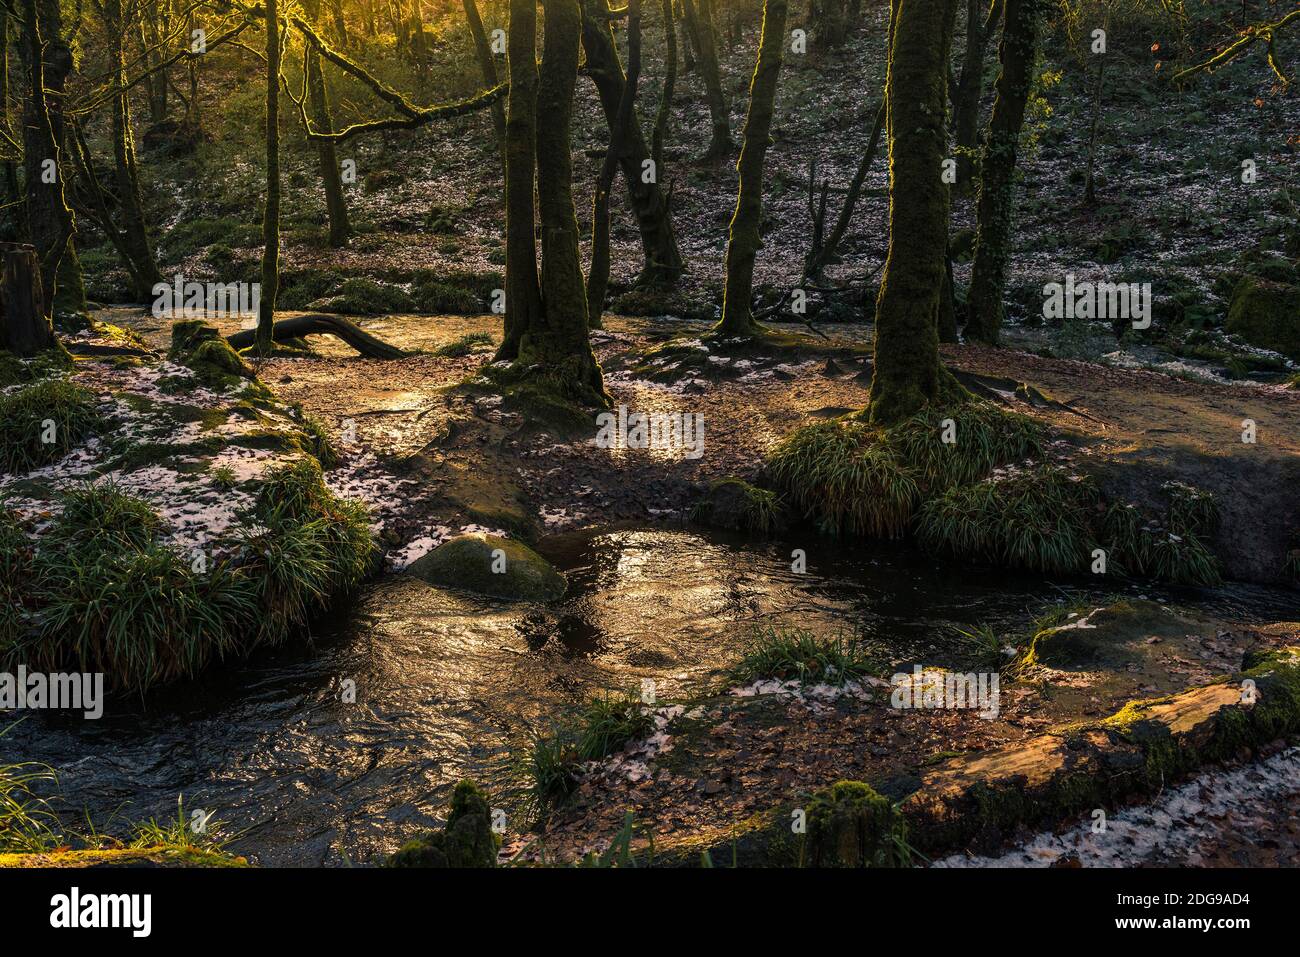 La lumière du soleil en fin d'après-midi tandis que la rivière Fowey coule le long des chutes Golita dans le bois historique et ancien de Draynes Wood, dans les Cornouailles. Banque D'Images